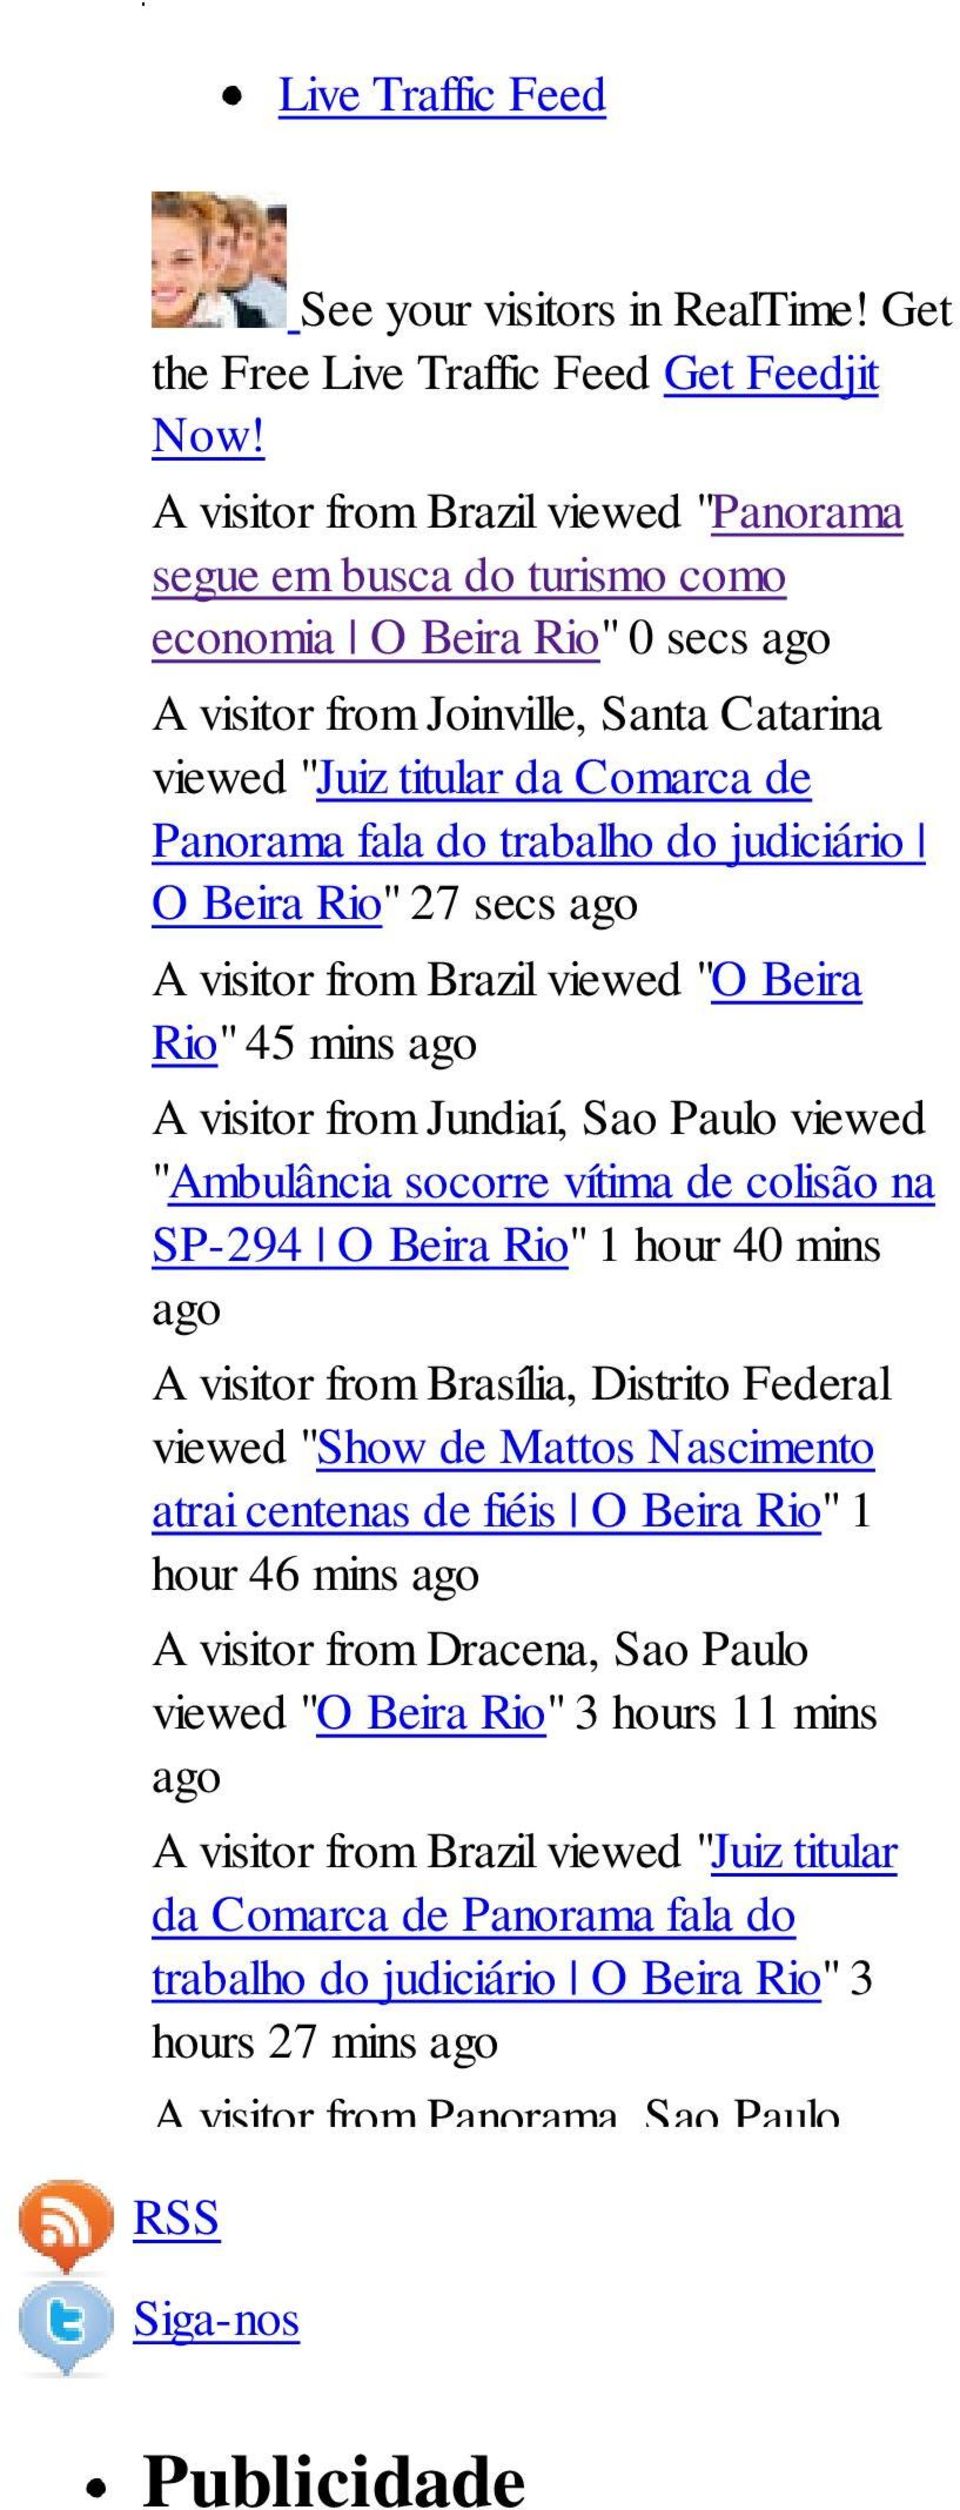 trabalho do judiciário O Beira Rio" 27 secs ago A visitor from Brazil viewed "O Beira Rio" 45 mins ago A visitor from Jundiaí, Sao Paulo viewed "Ambulância socorre vítima de colisão na SP-294 O Beira